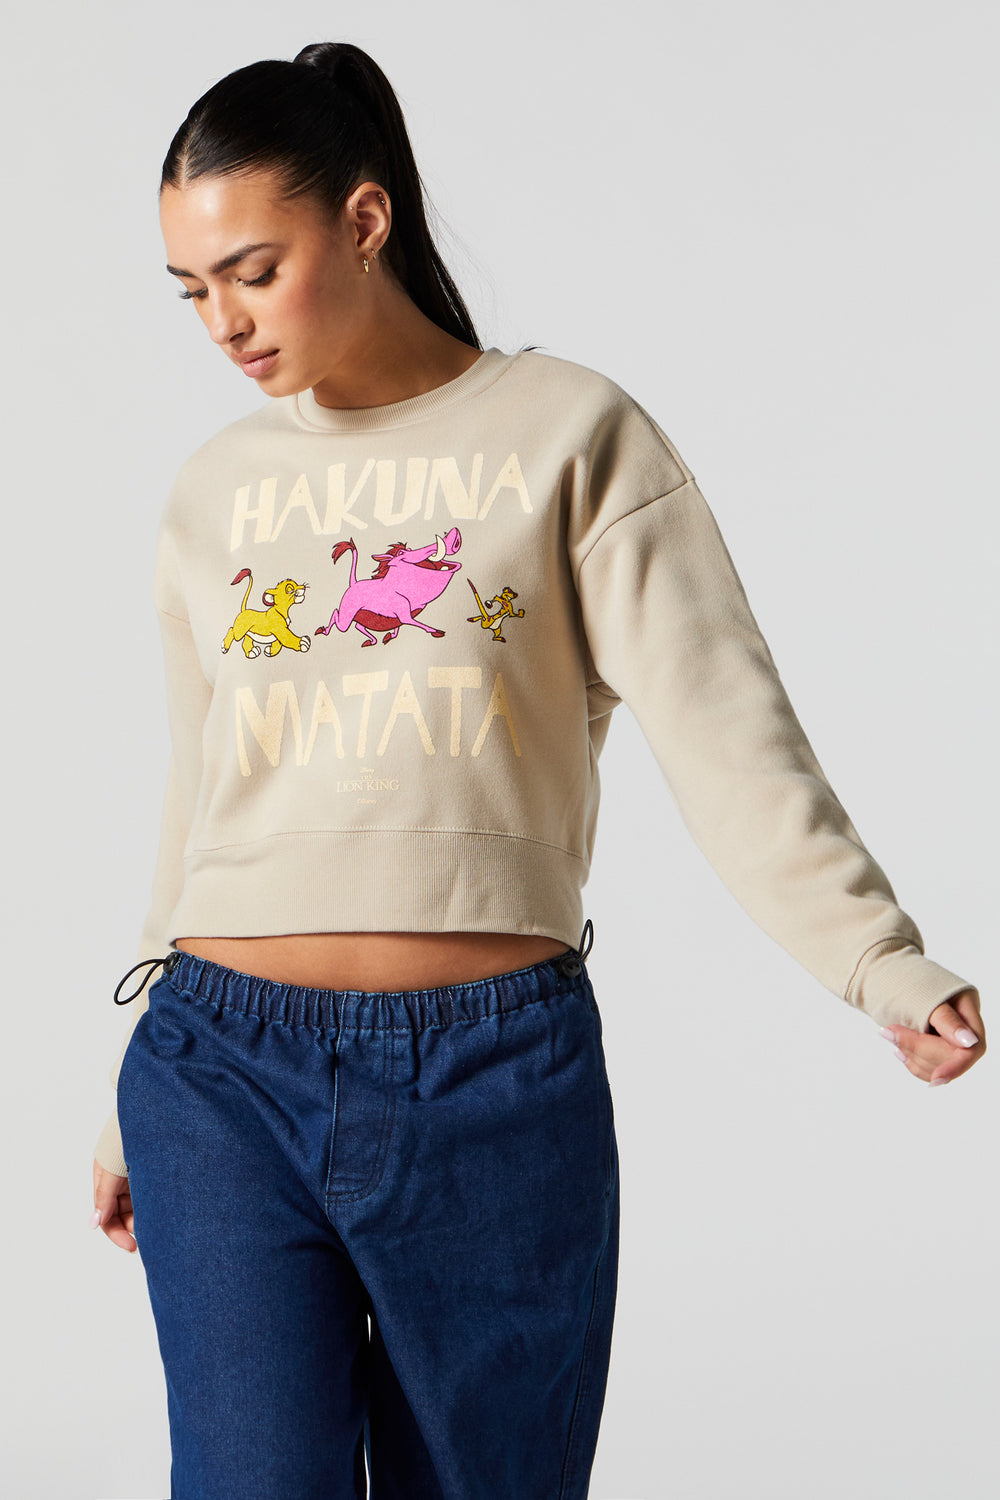 Hakuna Matata Graphic Fleece Sweatshirt Hakuna Matata Graphic Fleece Sweatshirt 1